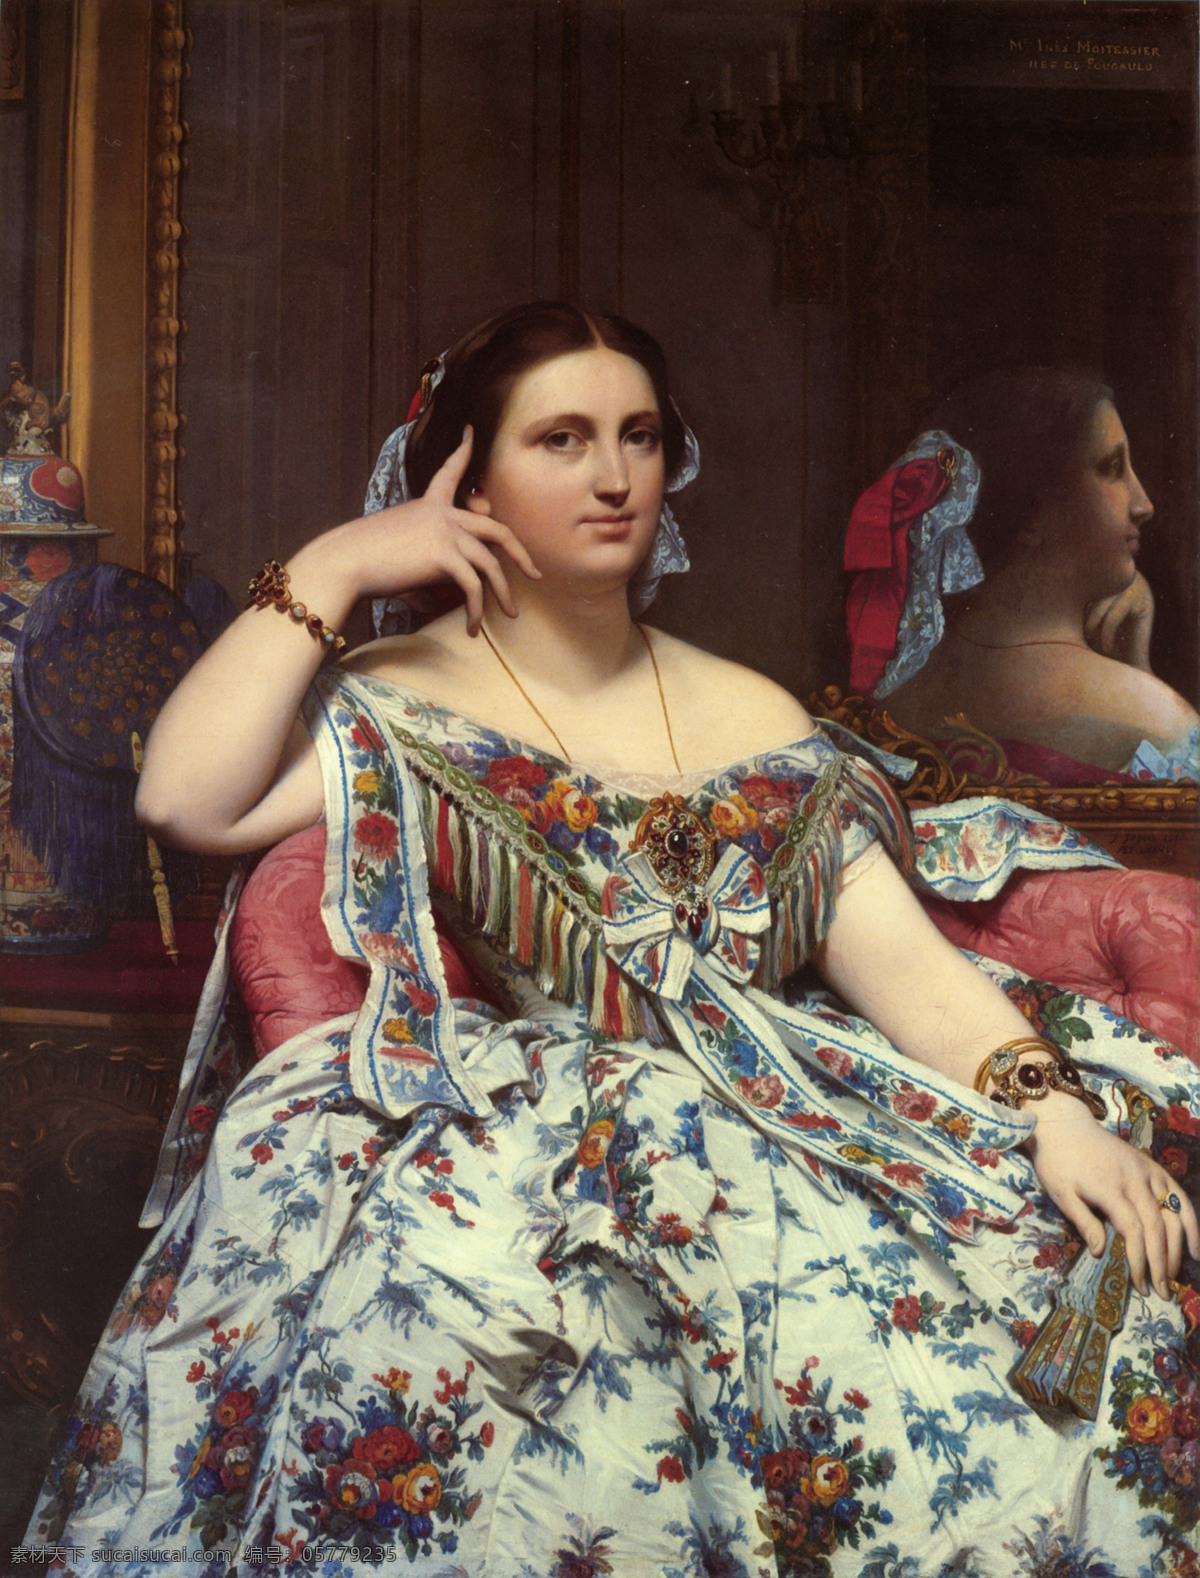 安格尔 高清晰 油画 安格尔油画 贵妇肖像 花裙子 古典写实 文化艺术 绘画书法 设计图库